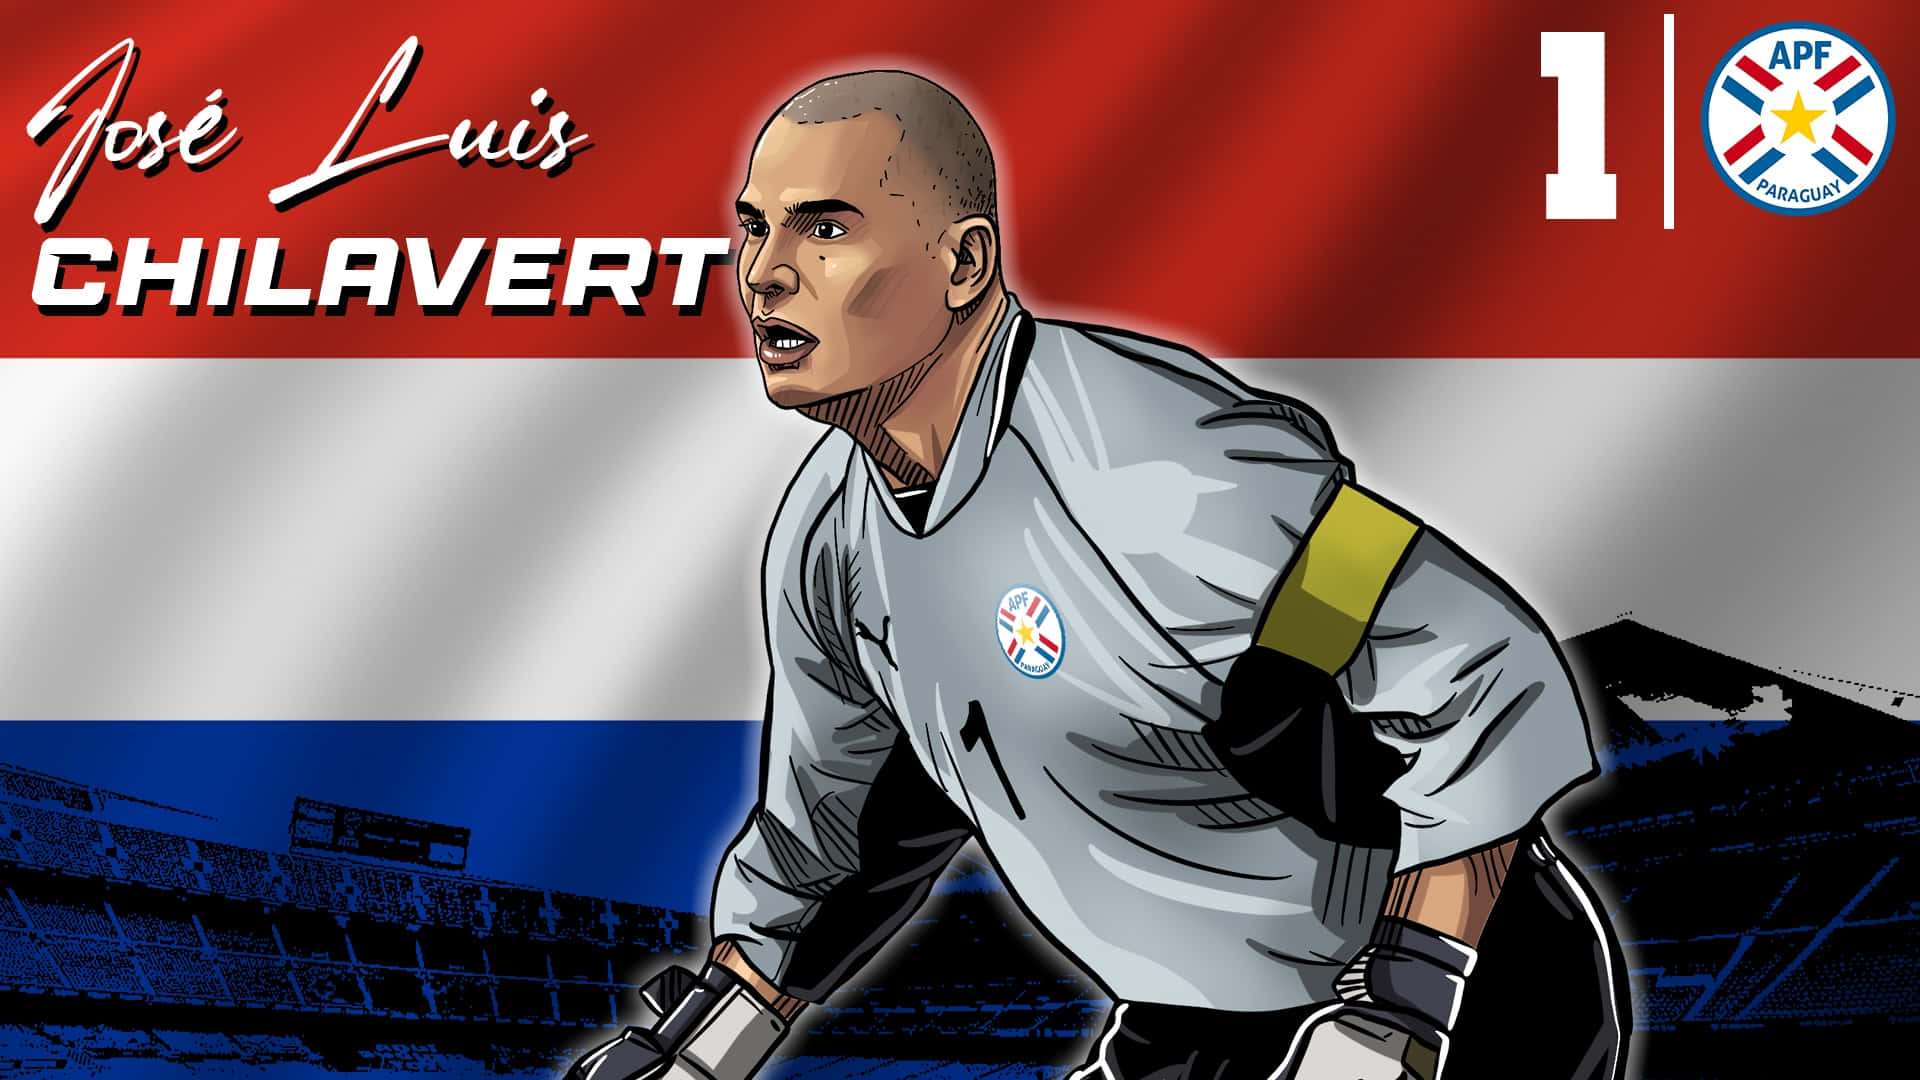 Legendary Paraguayan Goalkeeper Jose Luis Chilavert - Digital Art Wallpaper